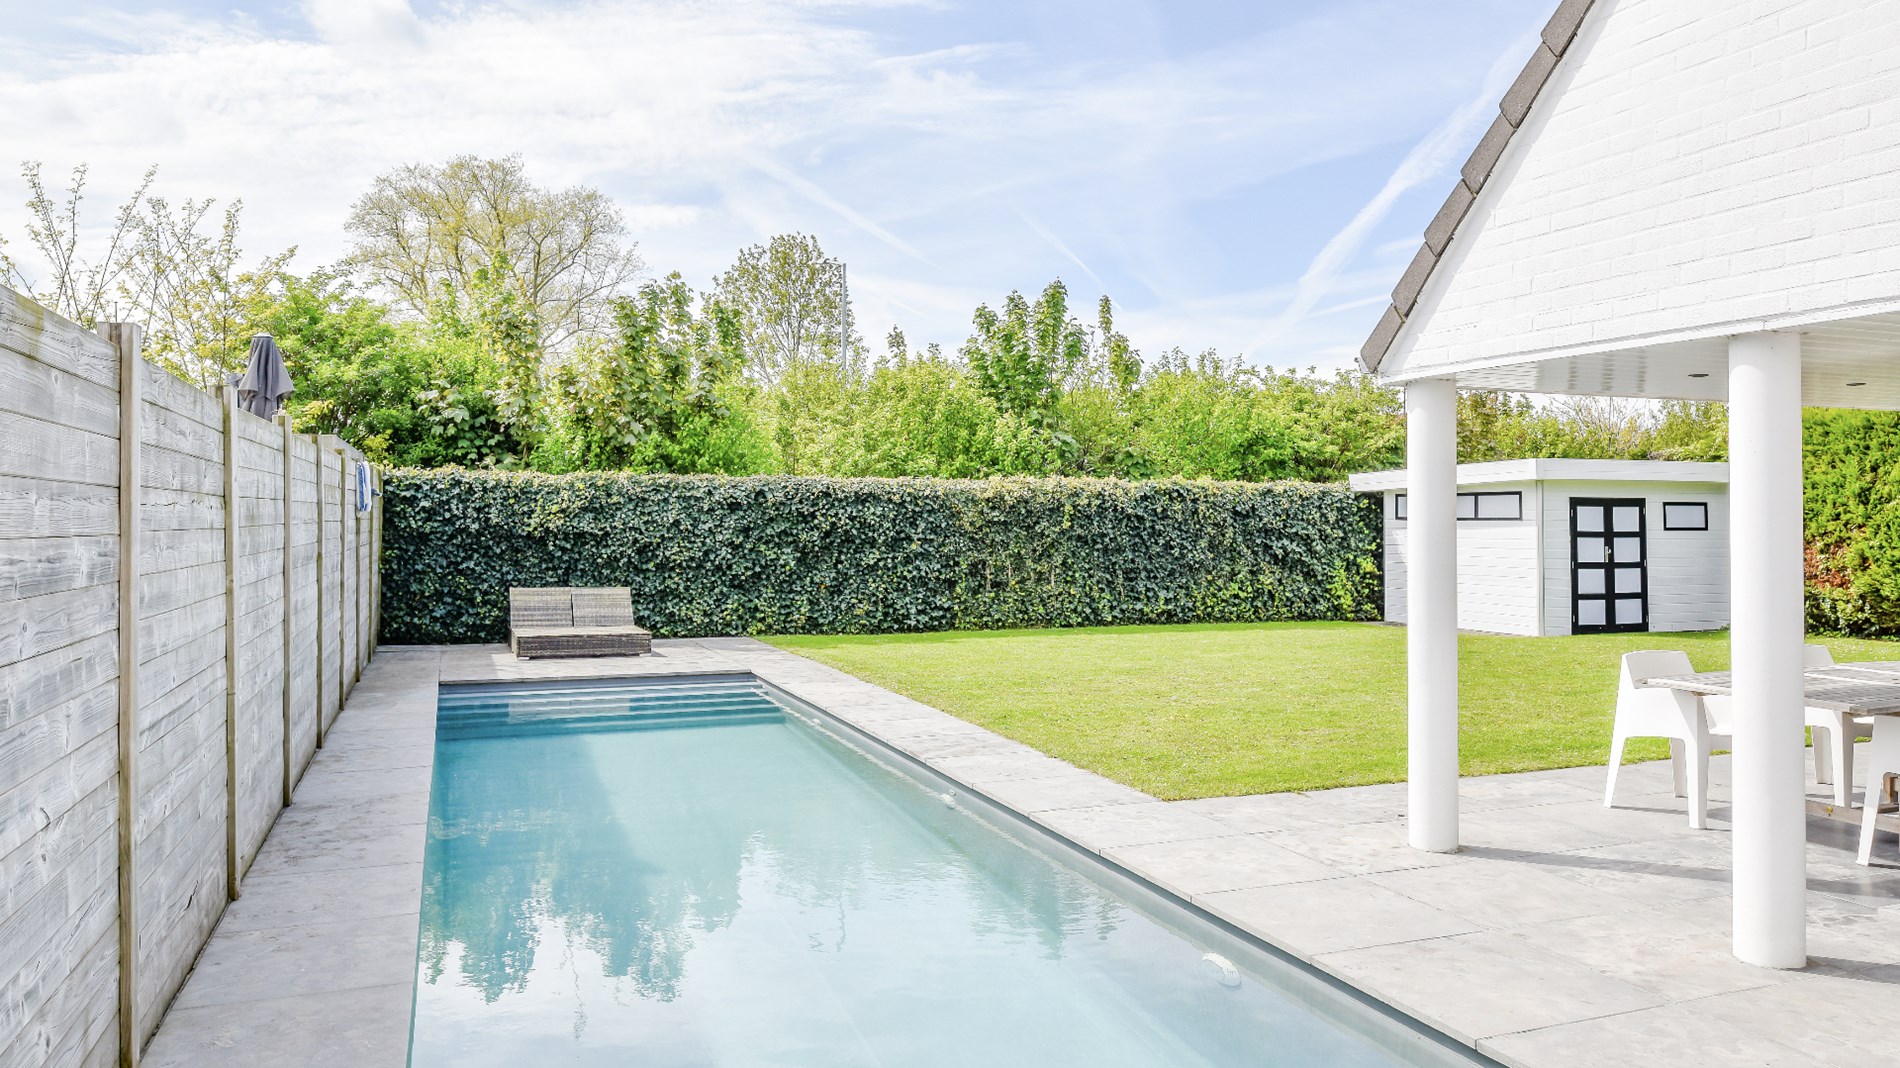 Verzorgde alleenstaande villa met zwembad en veel privacy, rustig gelegen op enkele minuten van het centrum van Knokke foto 4